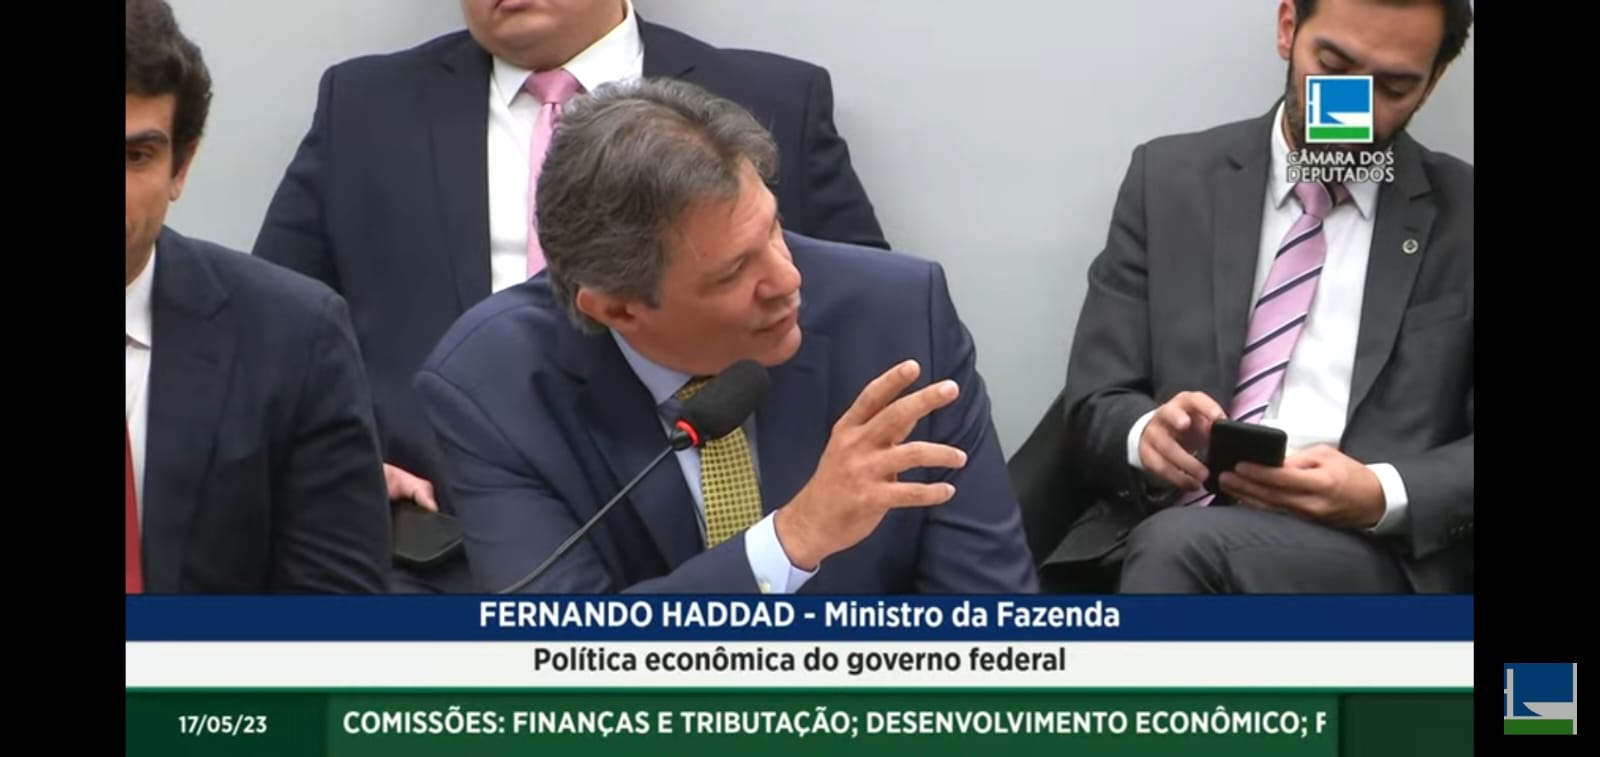 Segundo ministro, nova política de preços da Petrobras trará resultados positivos - Foto: Reprodução/Câmara dos Deputados